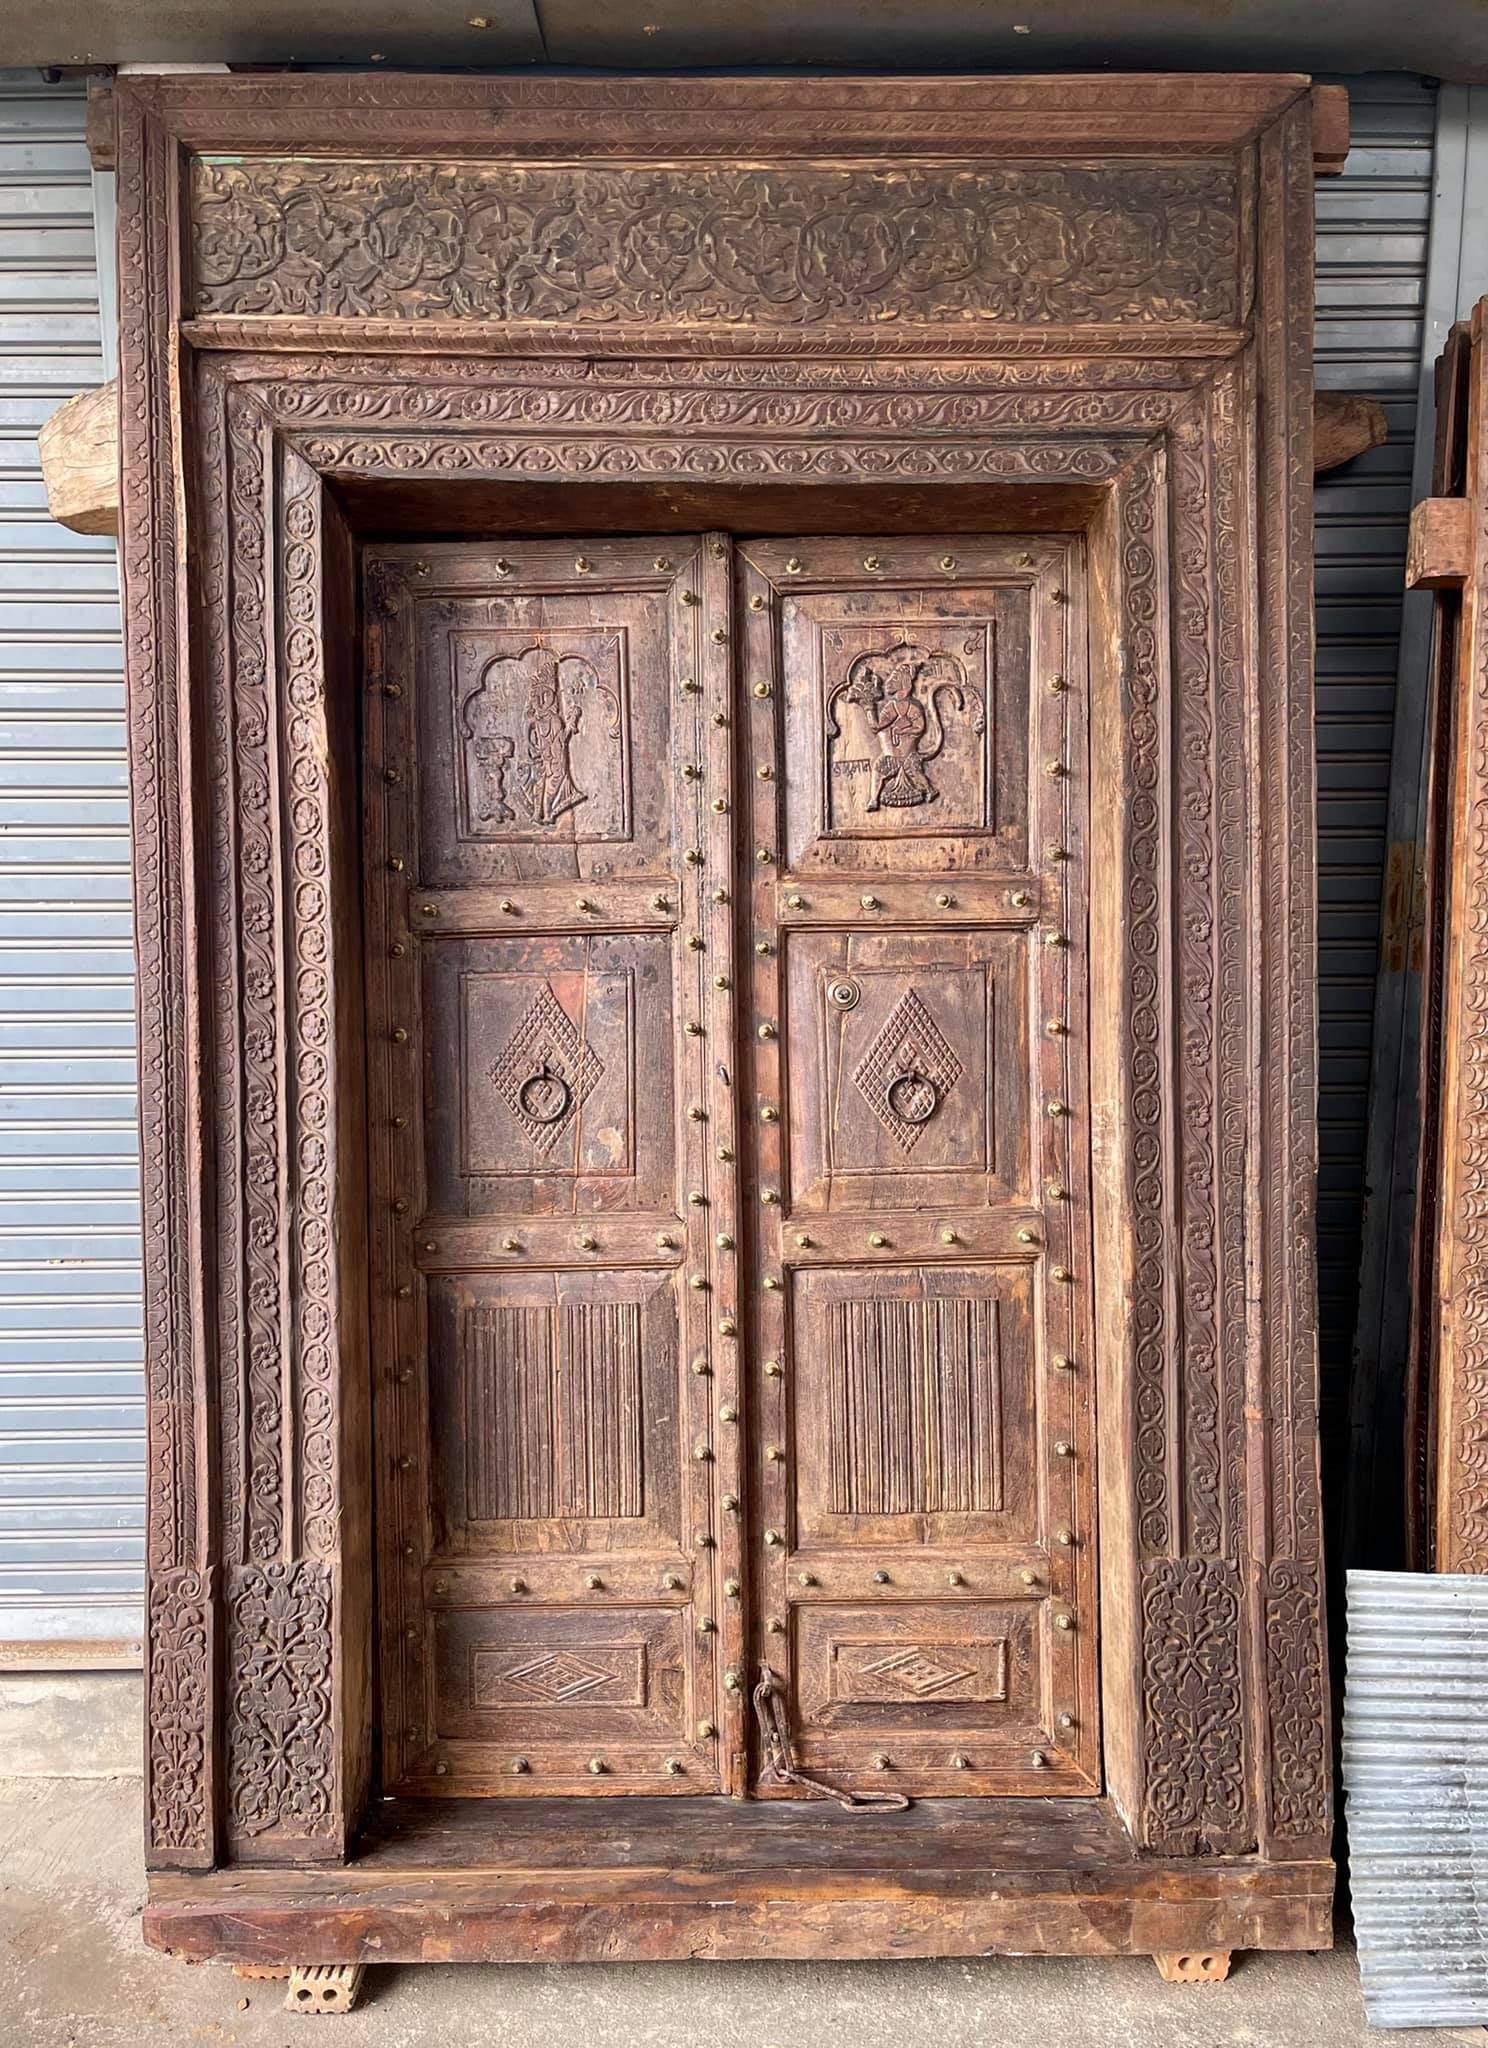 2XL55 Palace Door with Saraswati and Hanuman Carved